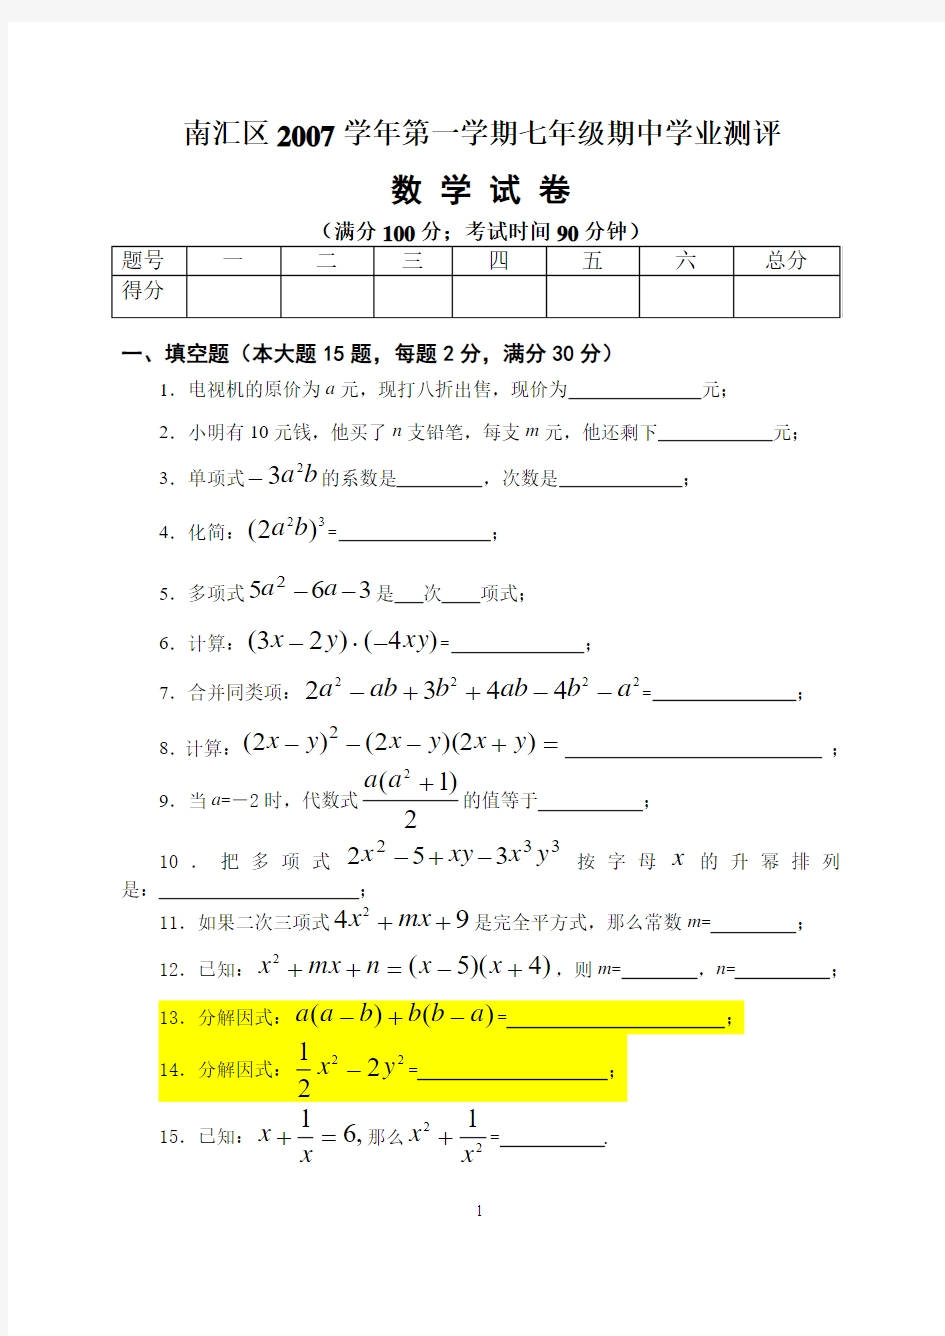 数学南汇区2007学年第一学期七年级期中考试数学试卷10.15